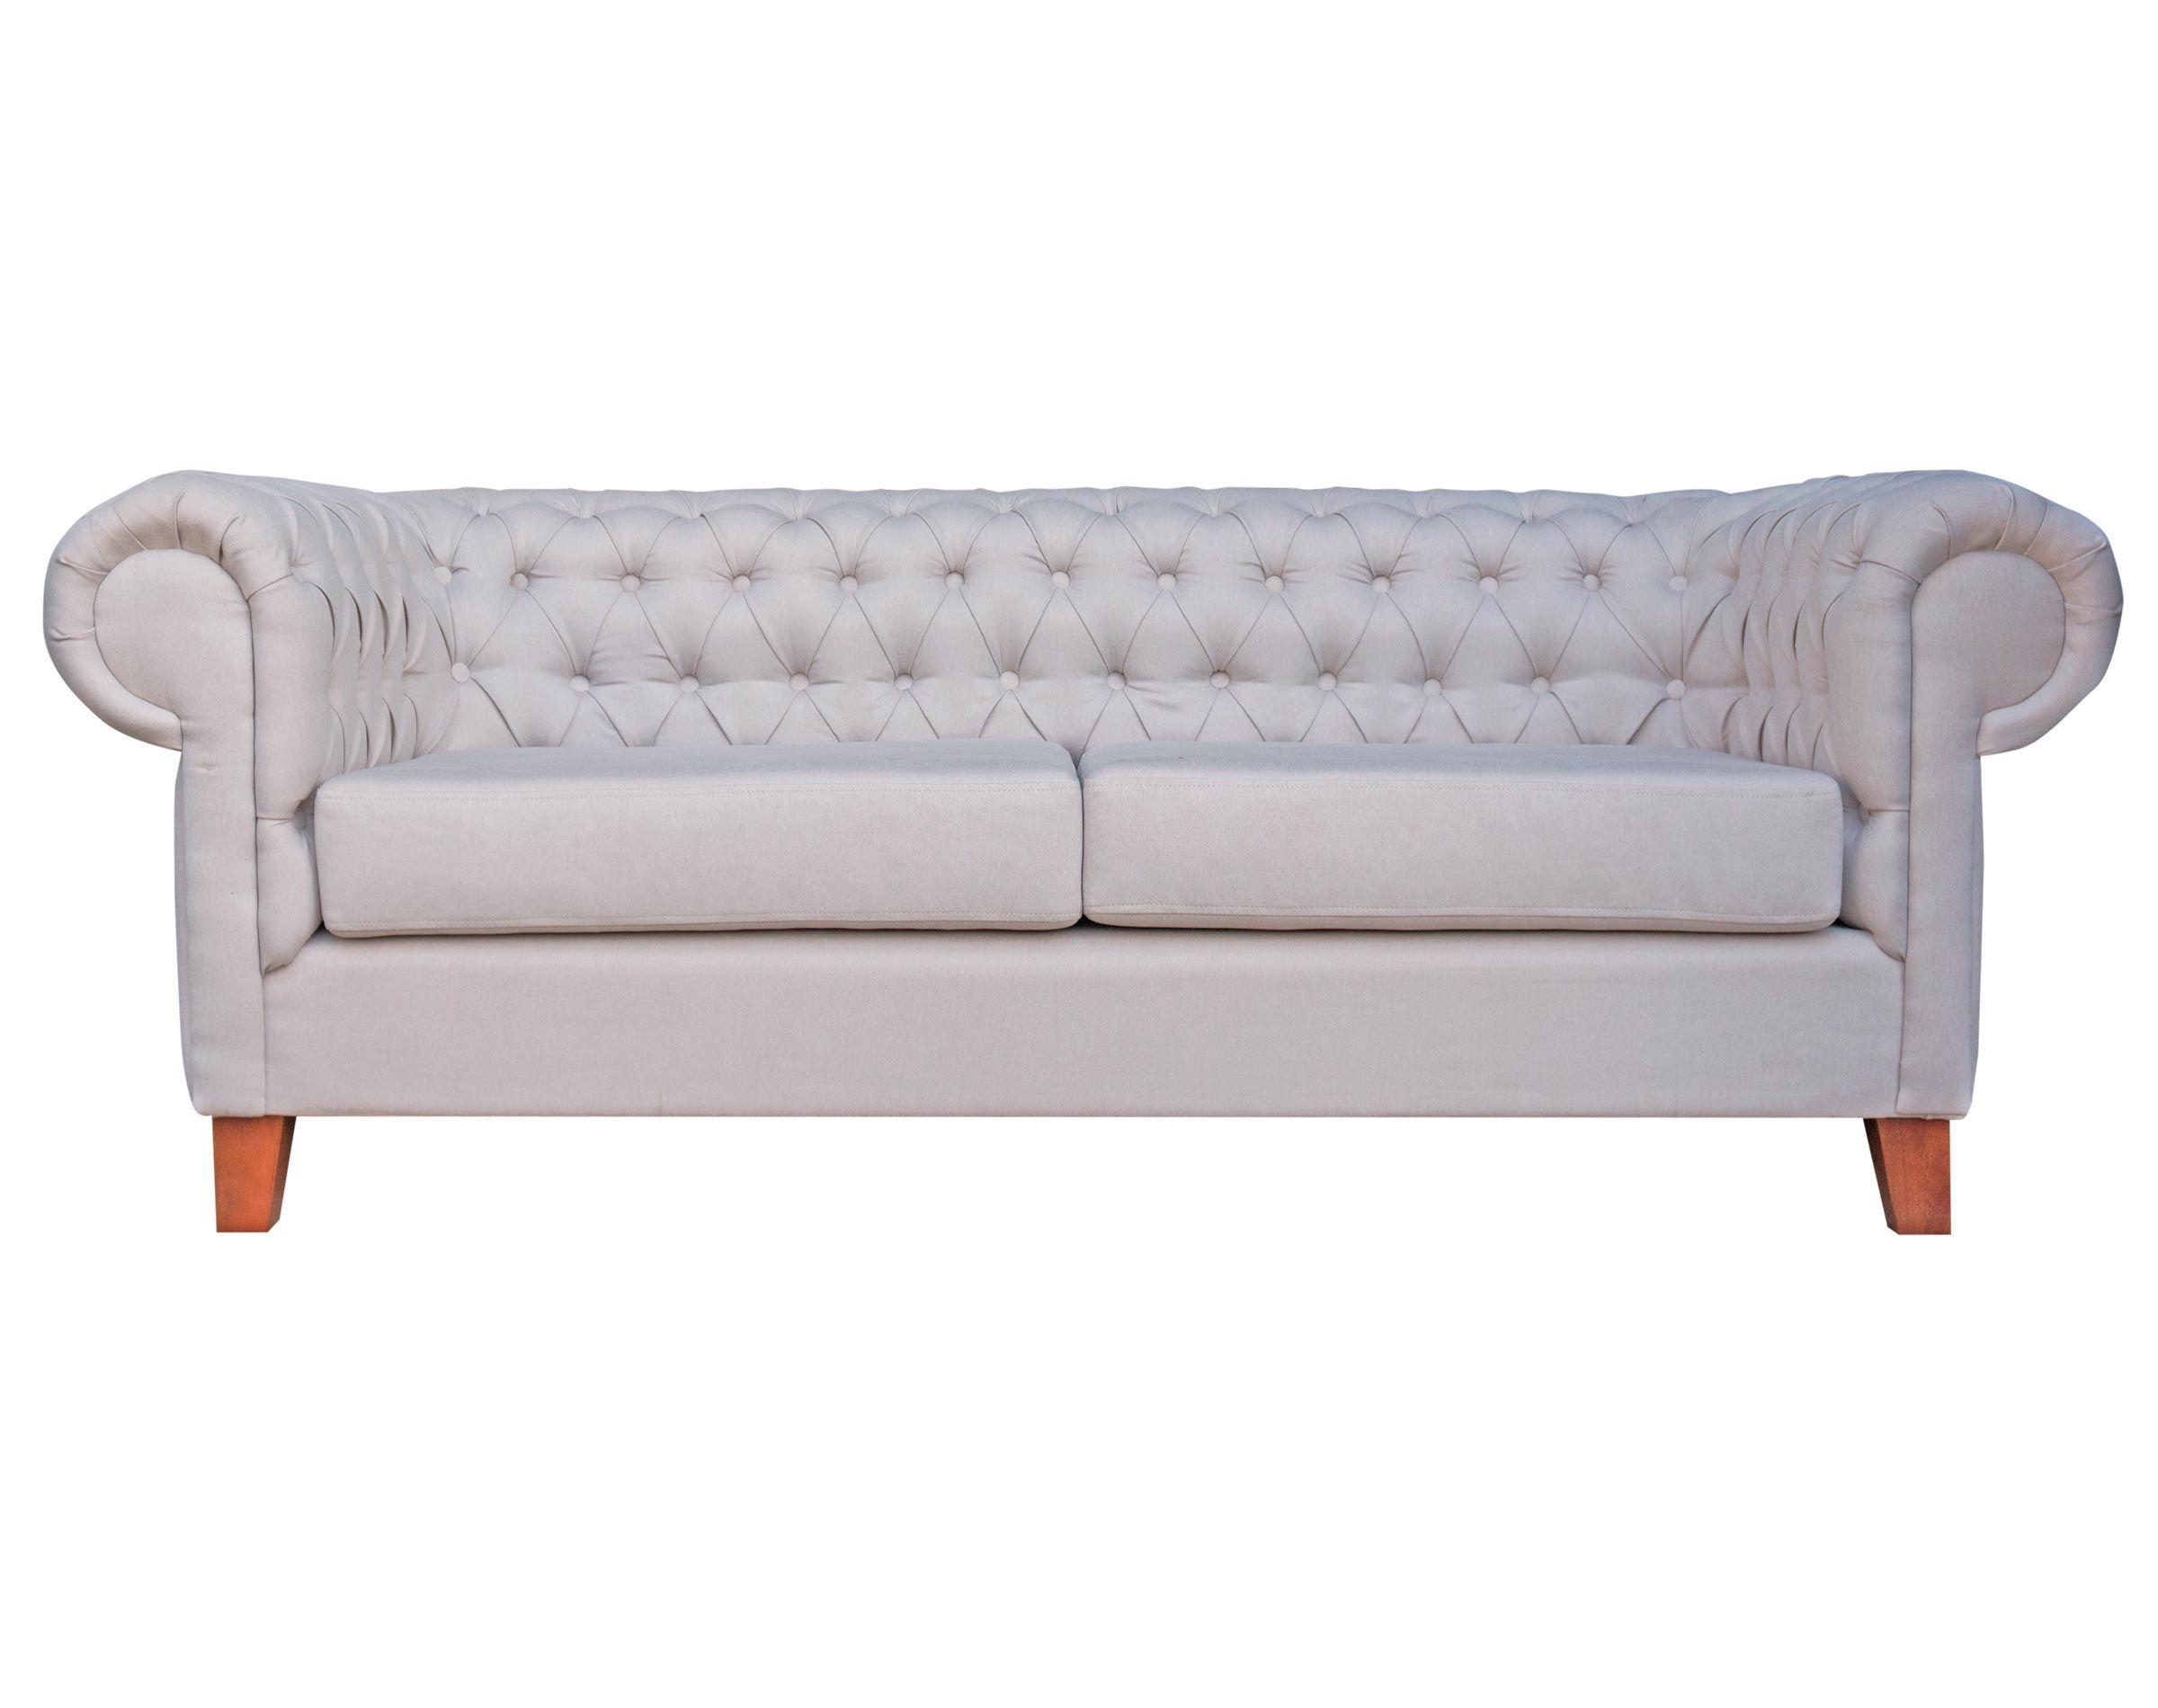 Elegante sofá modelo Chesterfield tapiz color perla y patas madera nogal